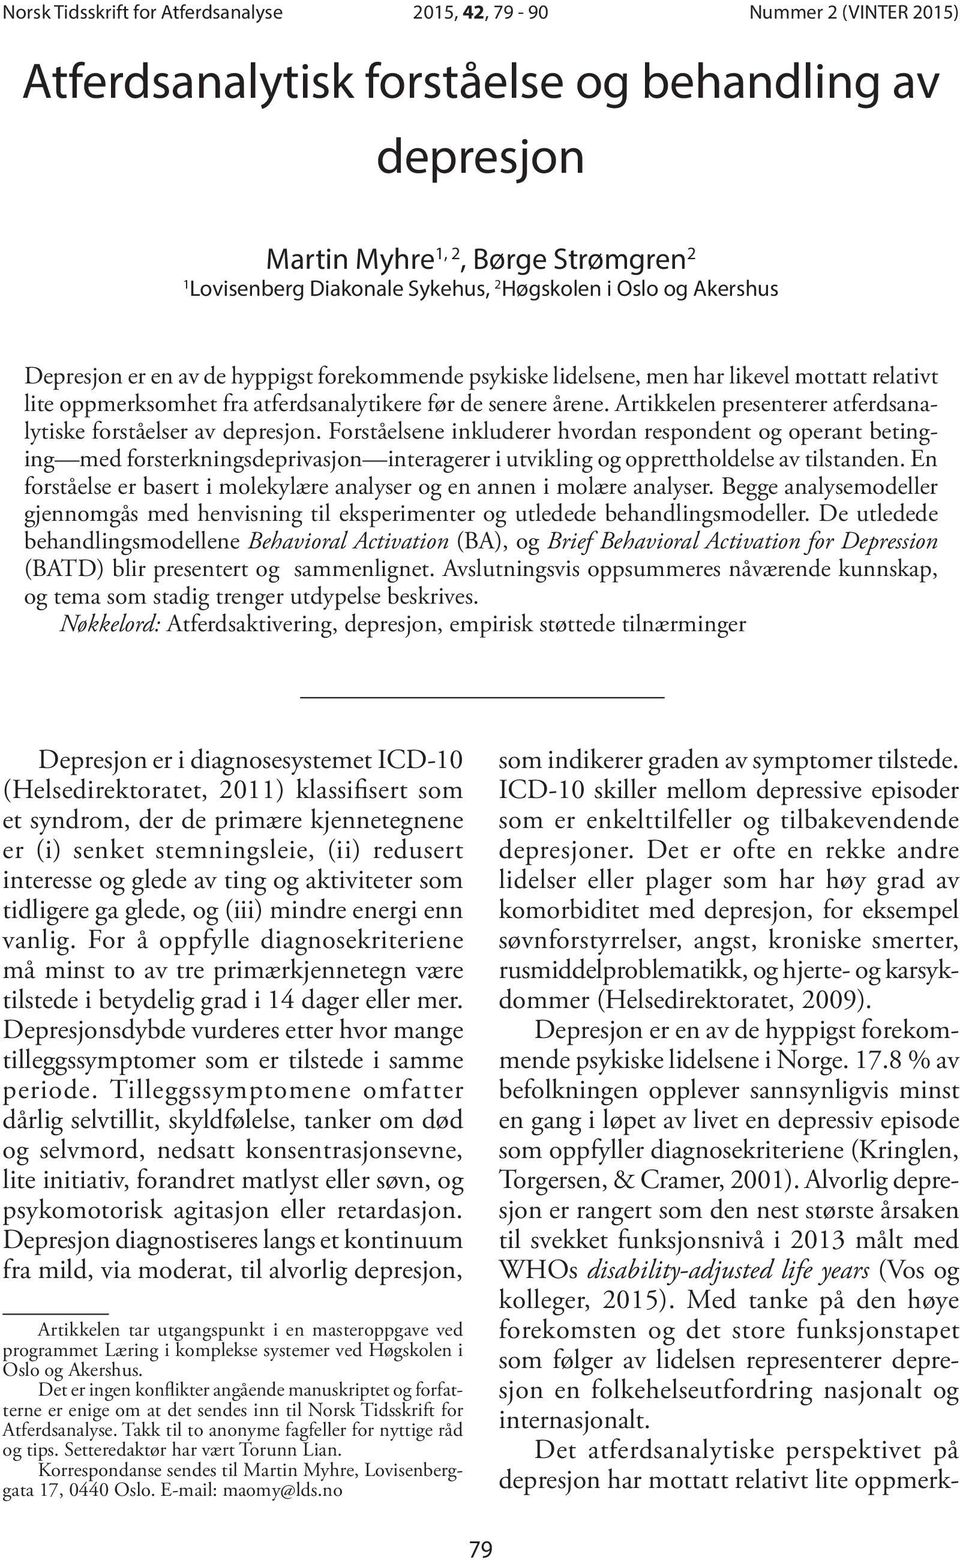 Artikkelen presenterer atferdsanalytiske forståelser av depresjon.